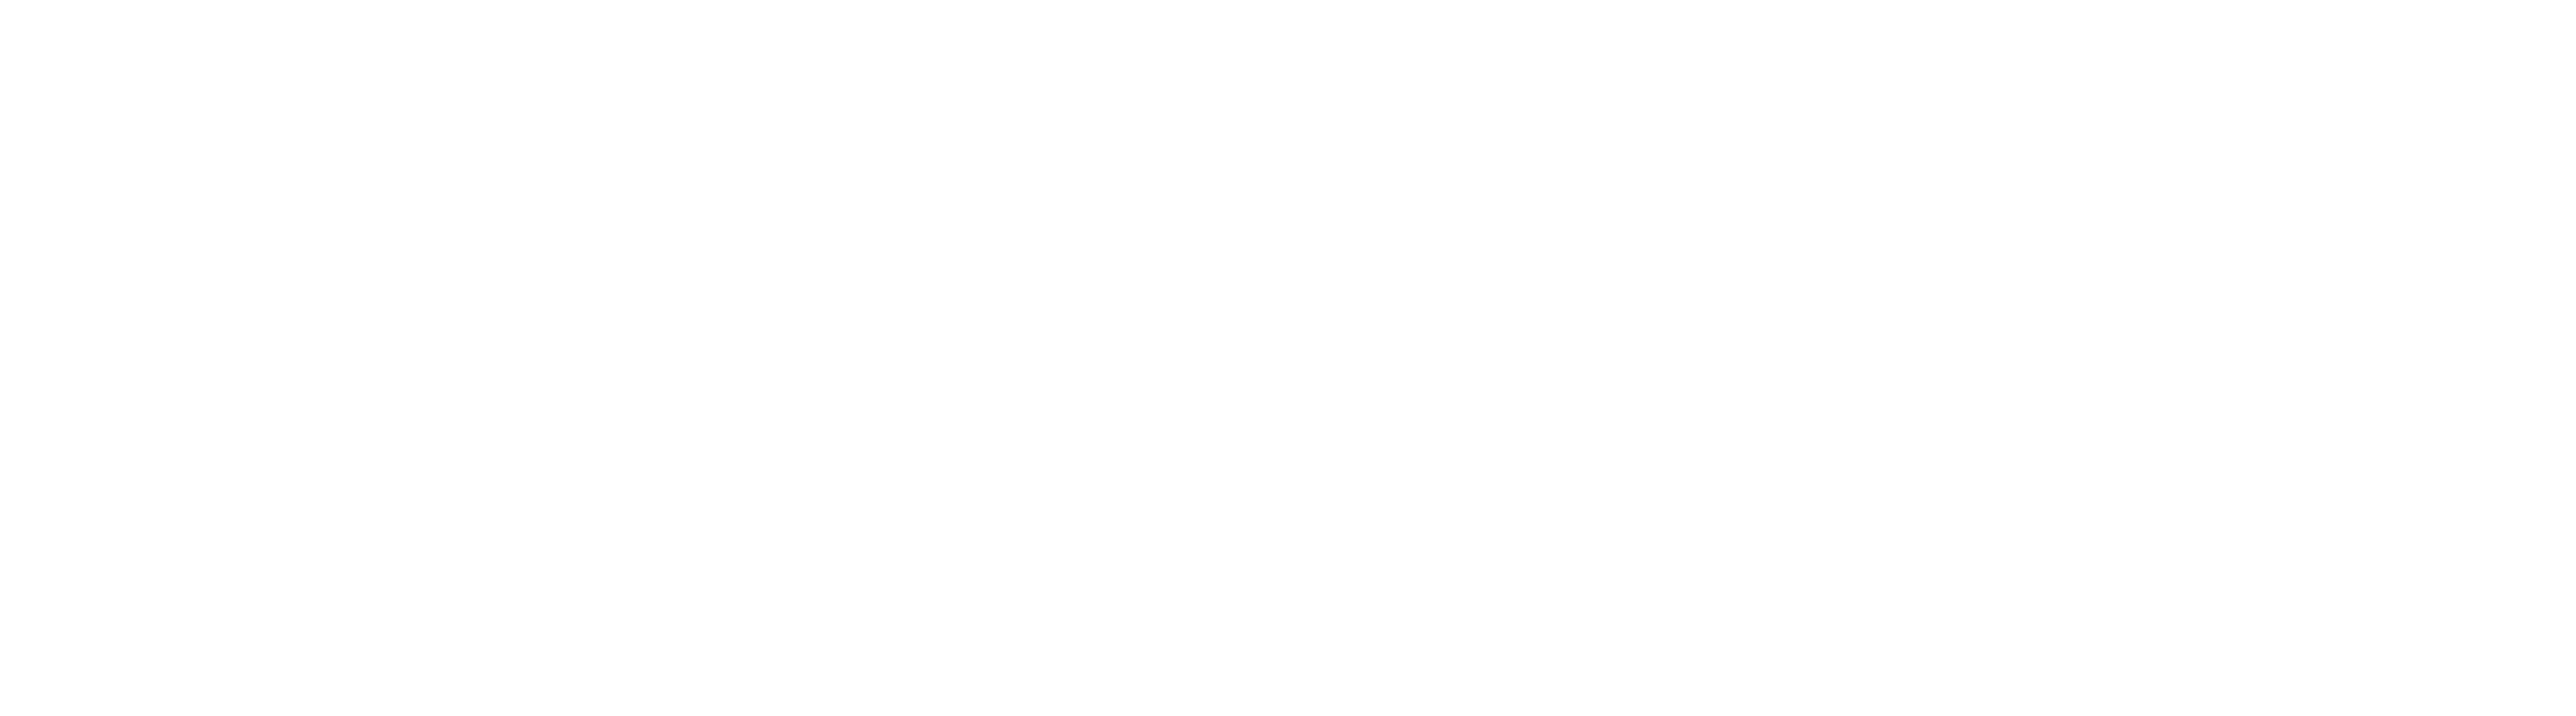 Mary Jones Pilgrim Centre logo